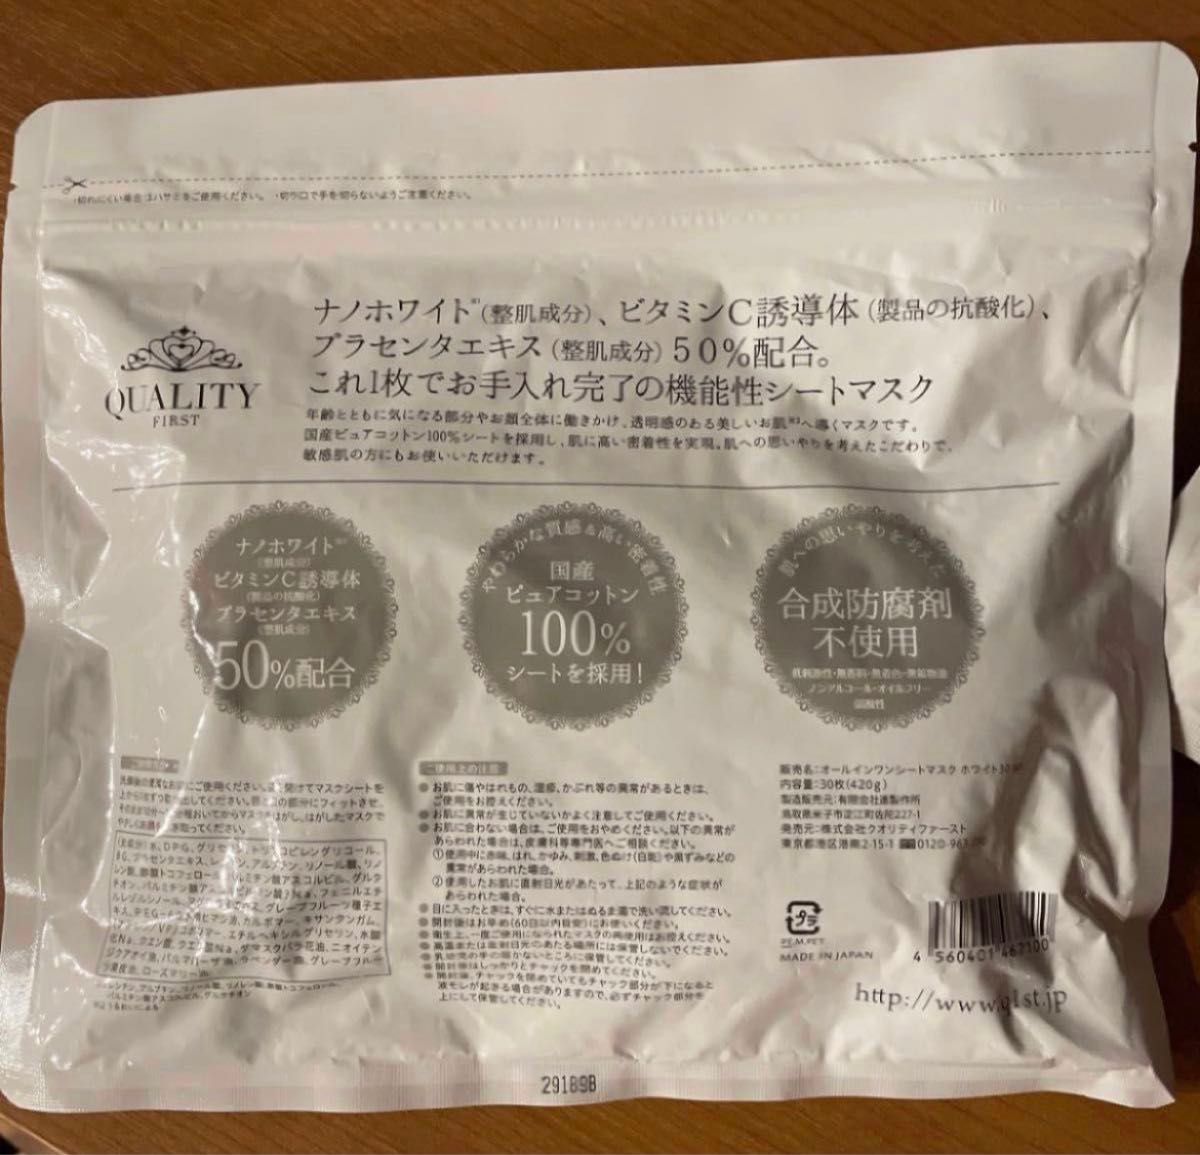 【2袋セット】クオリティファースト オールインワンシートマスク ホワイトEX 30枚入